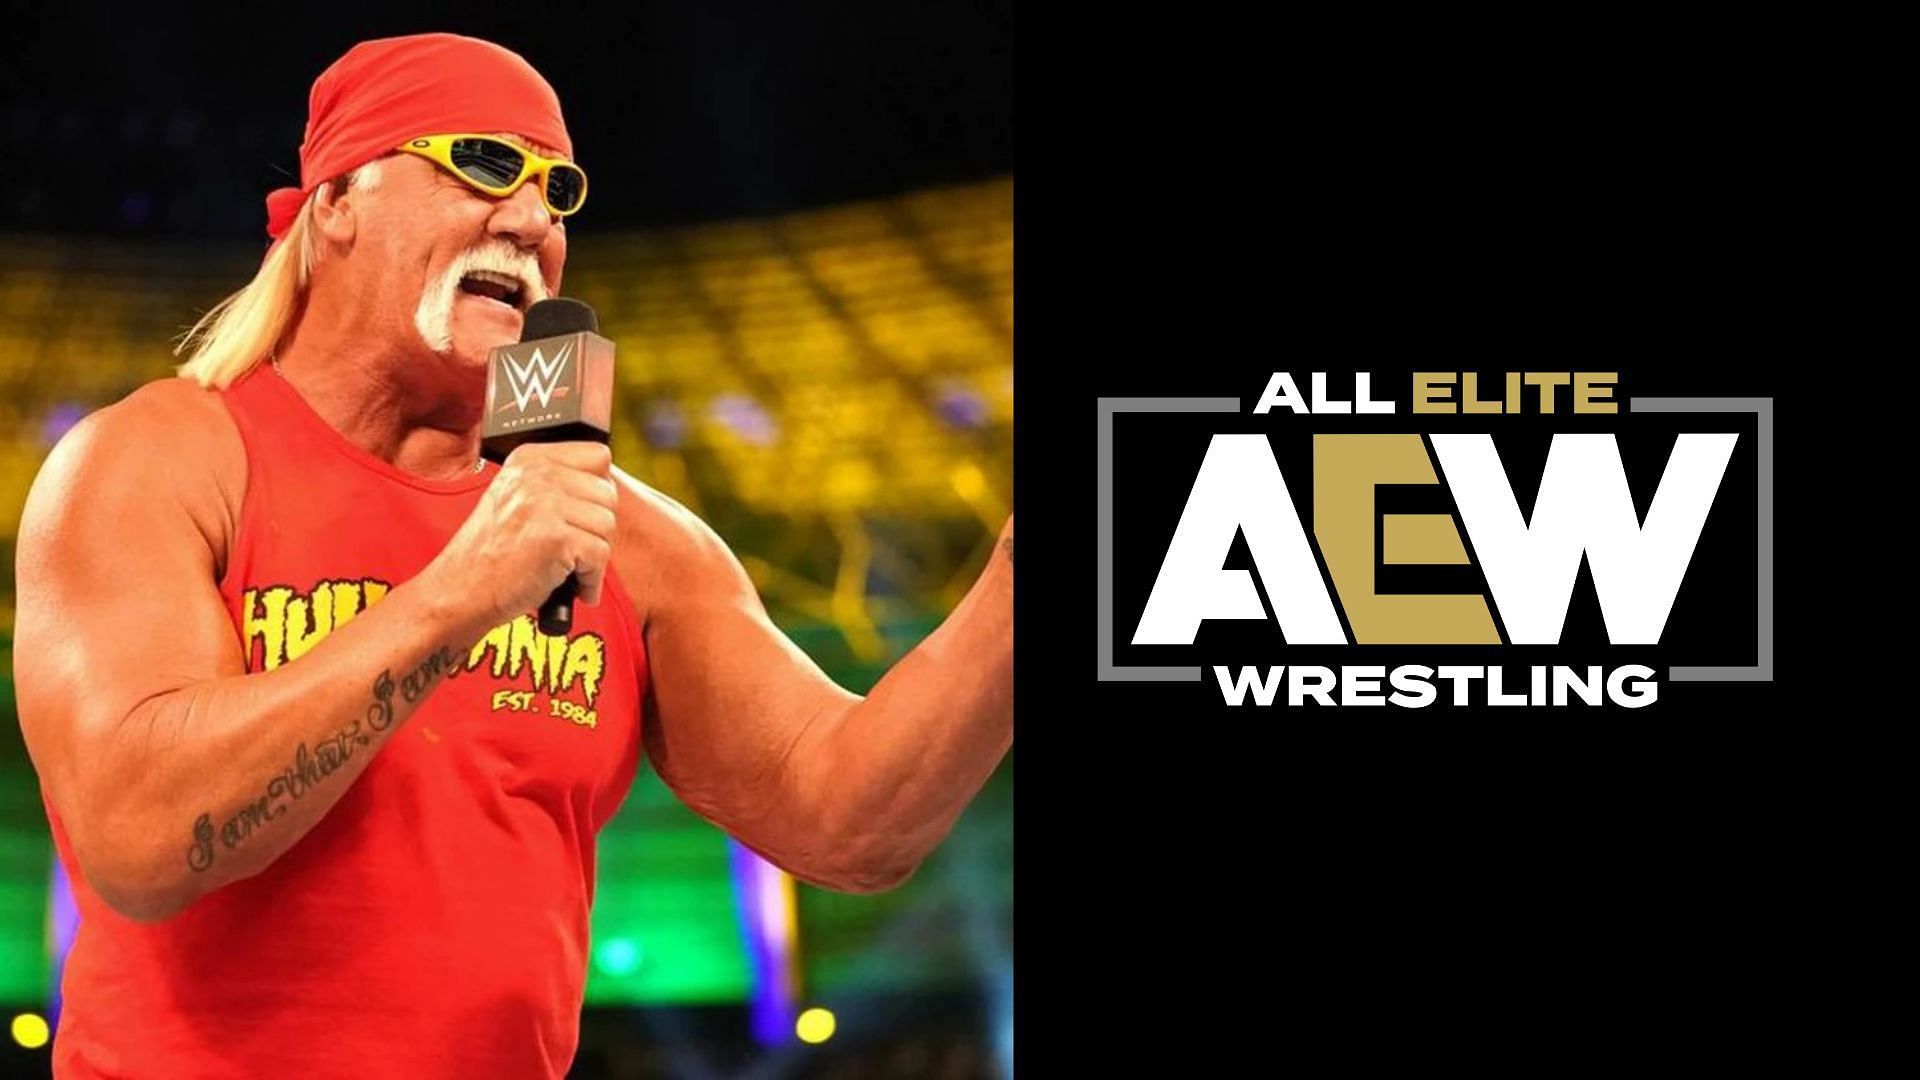 WWE legend Hulk Hogan